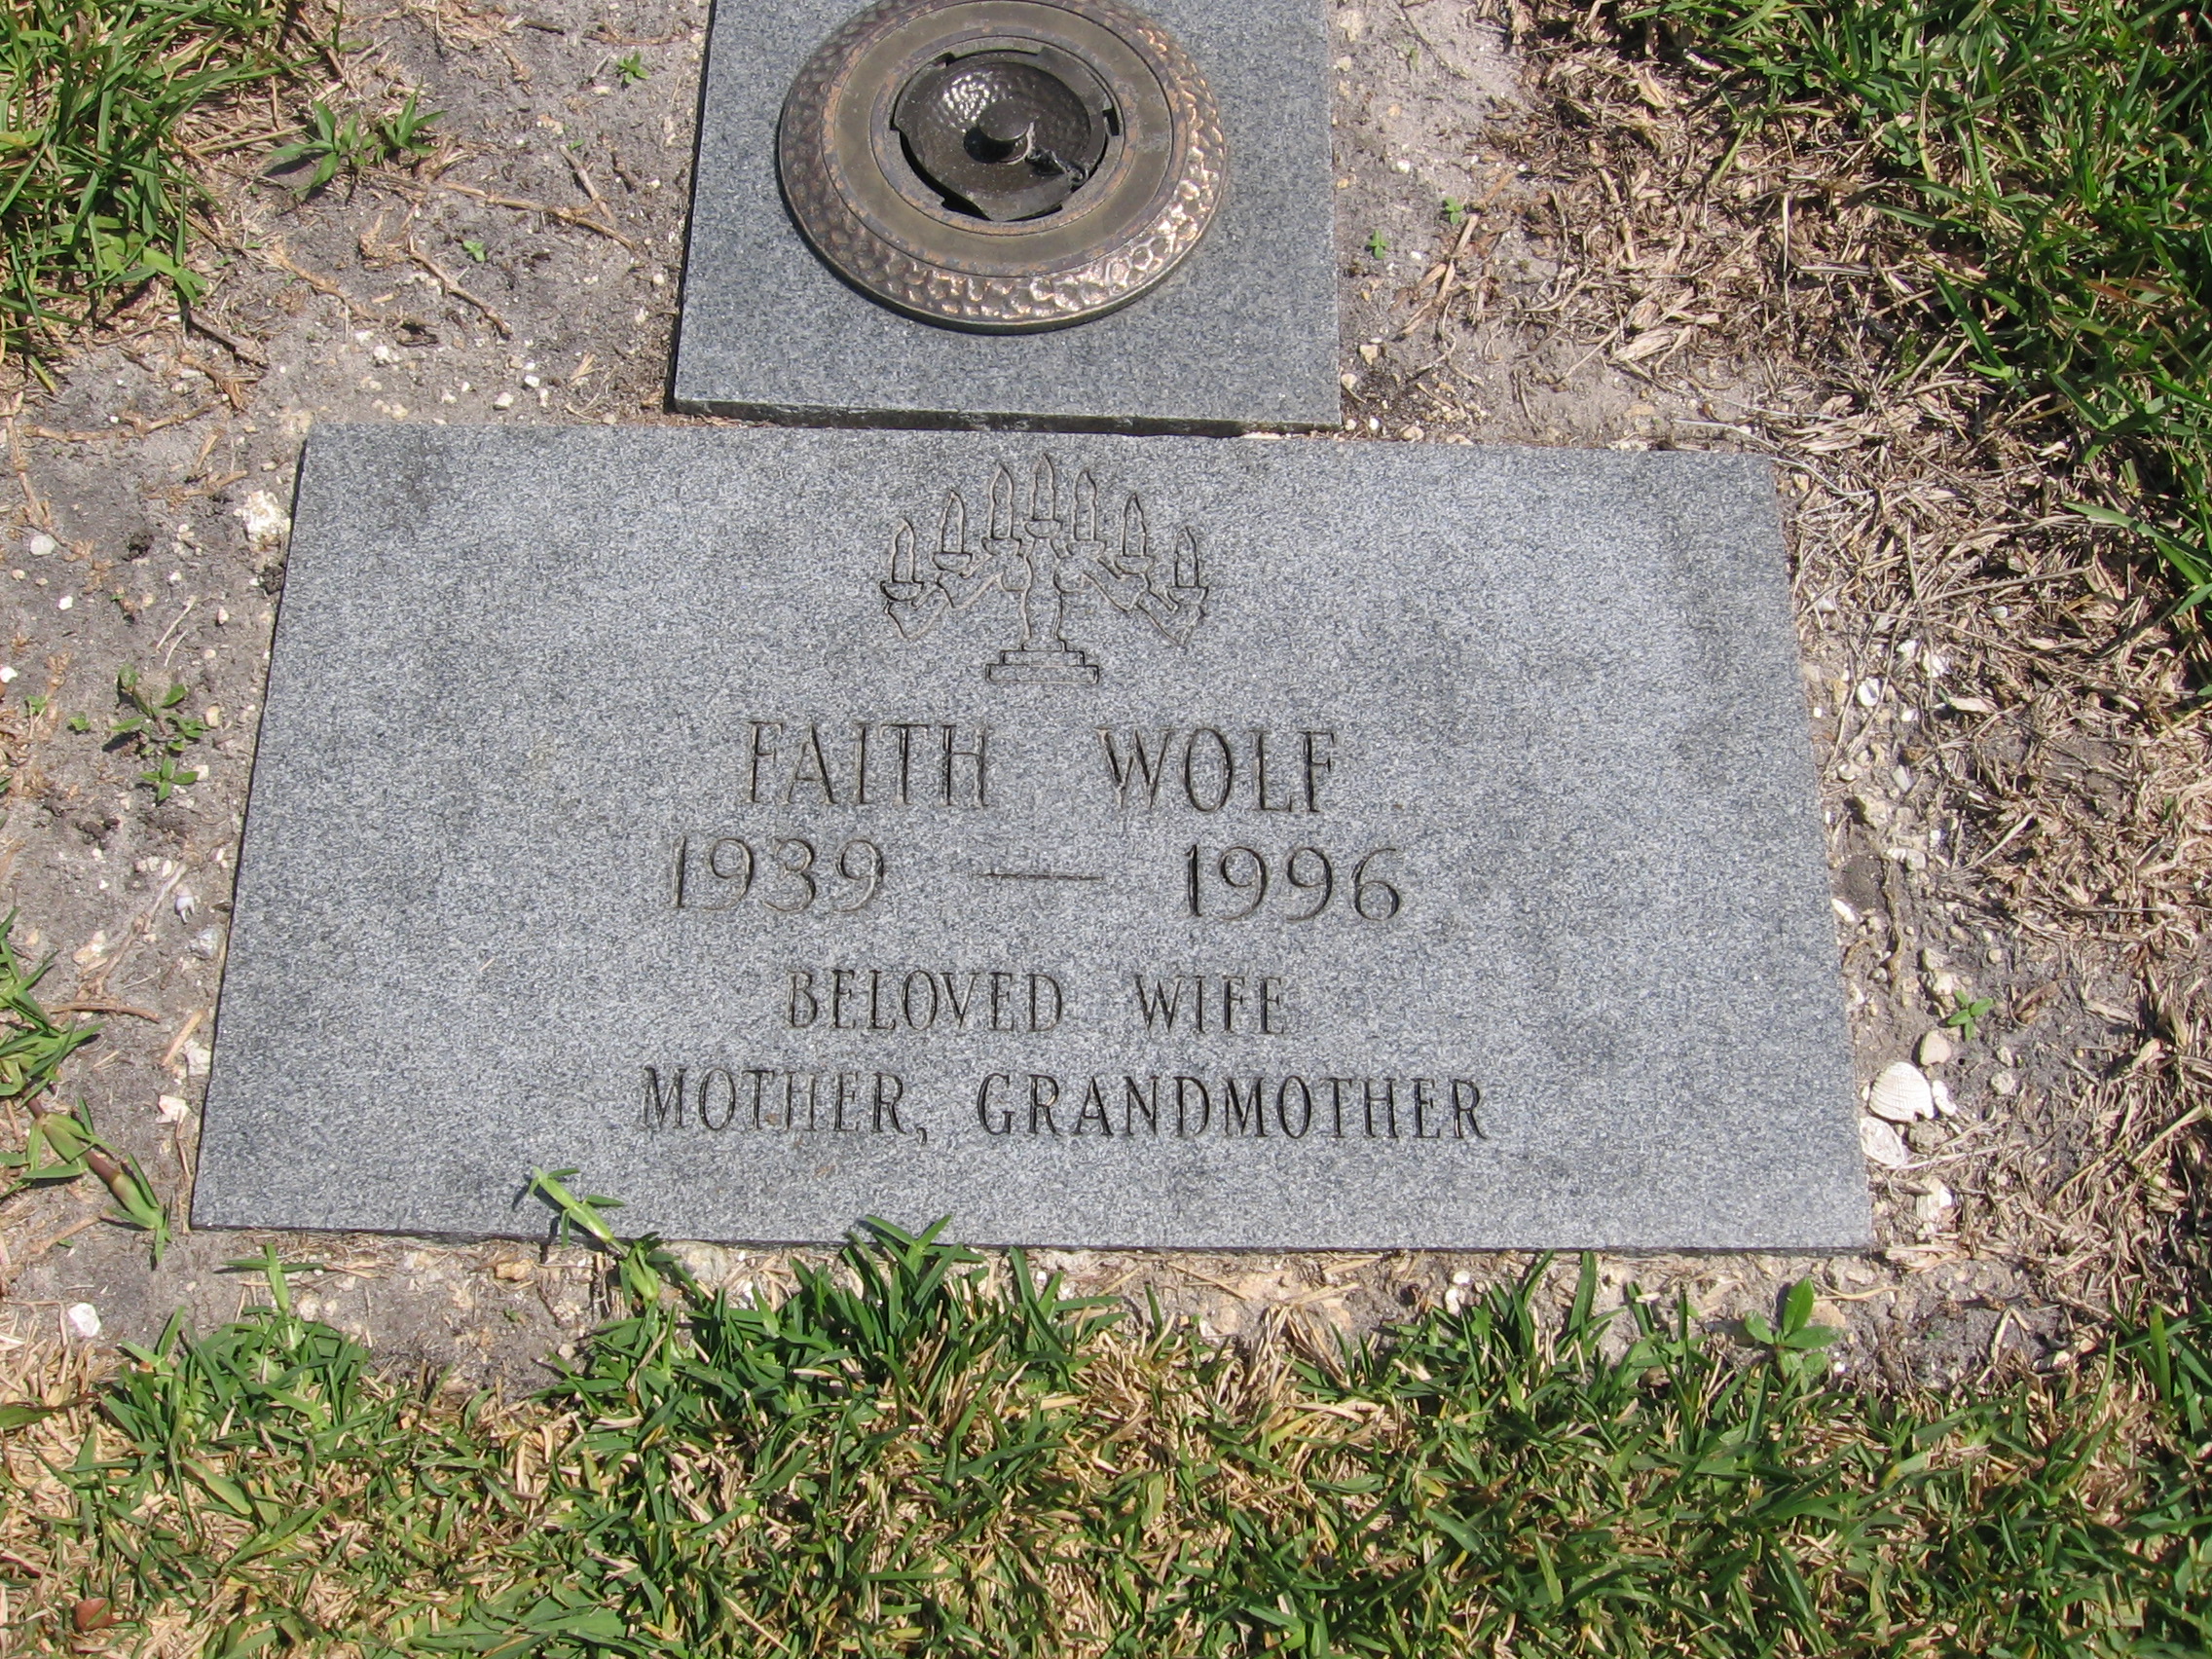 Faith Wolf